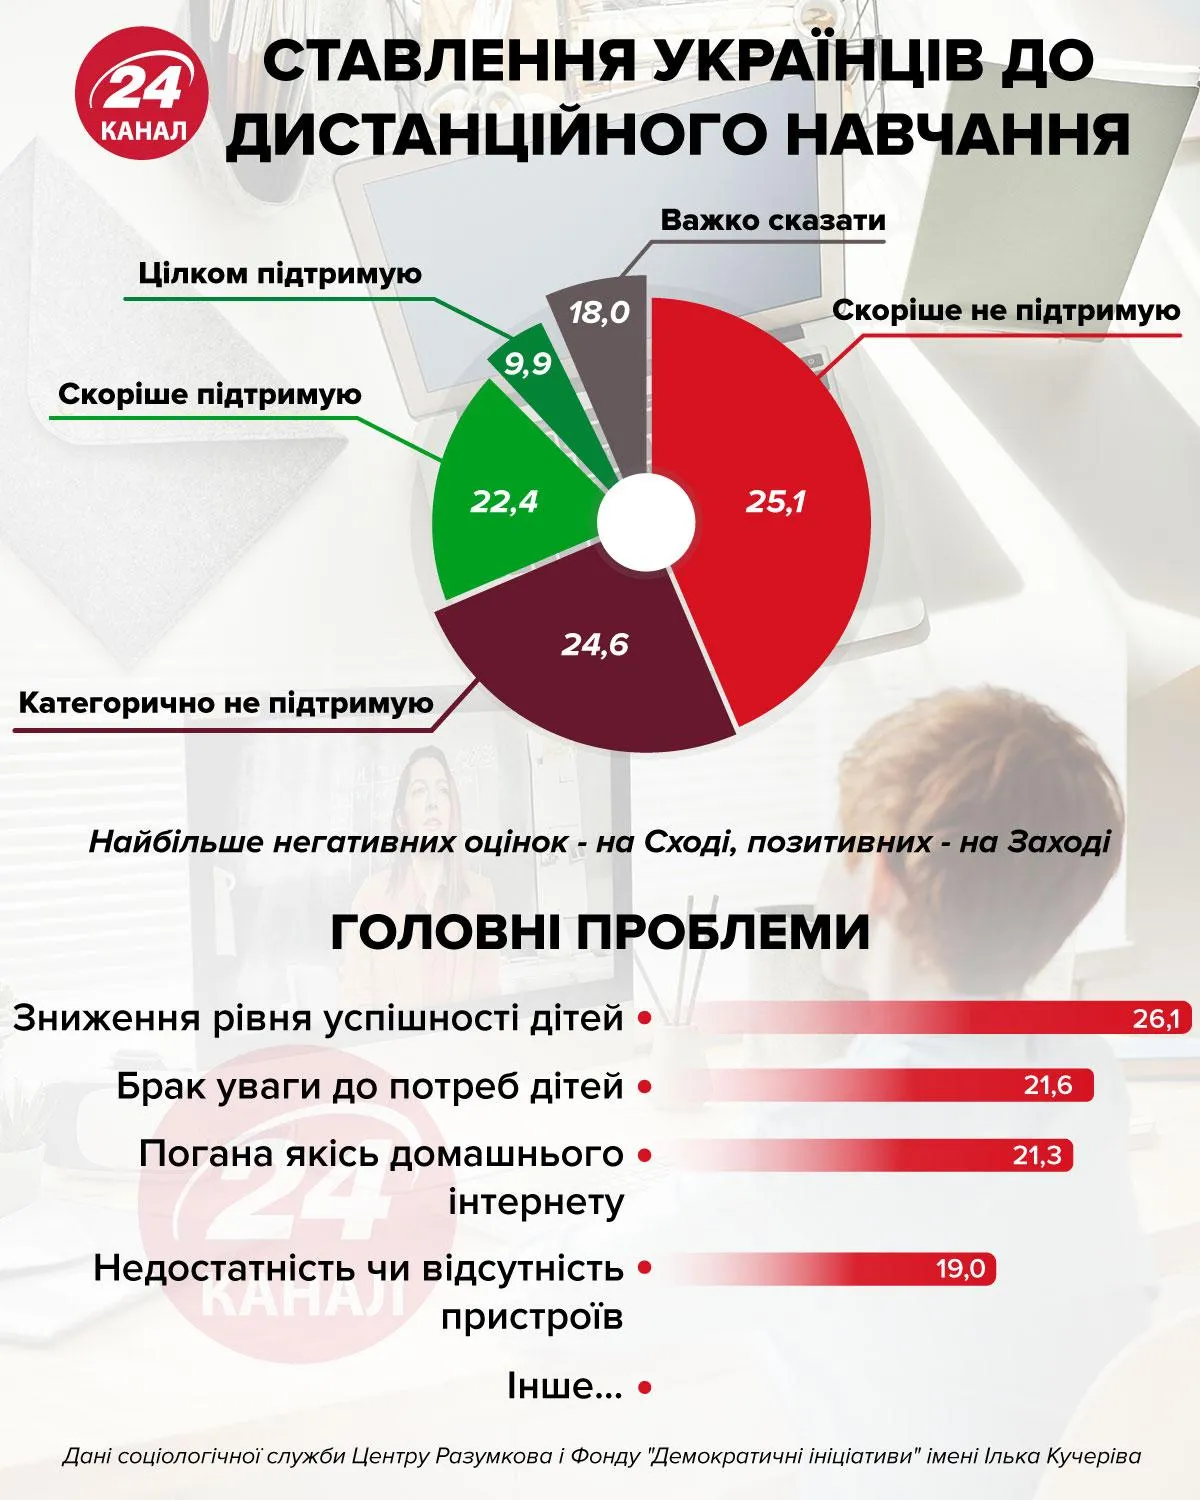 Как относятся украинцы к дистанционному обучению инфографика 24 канала